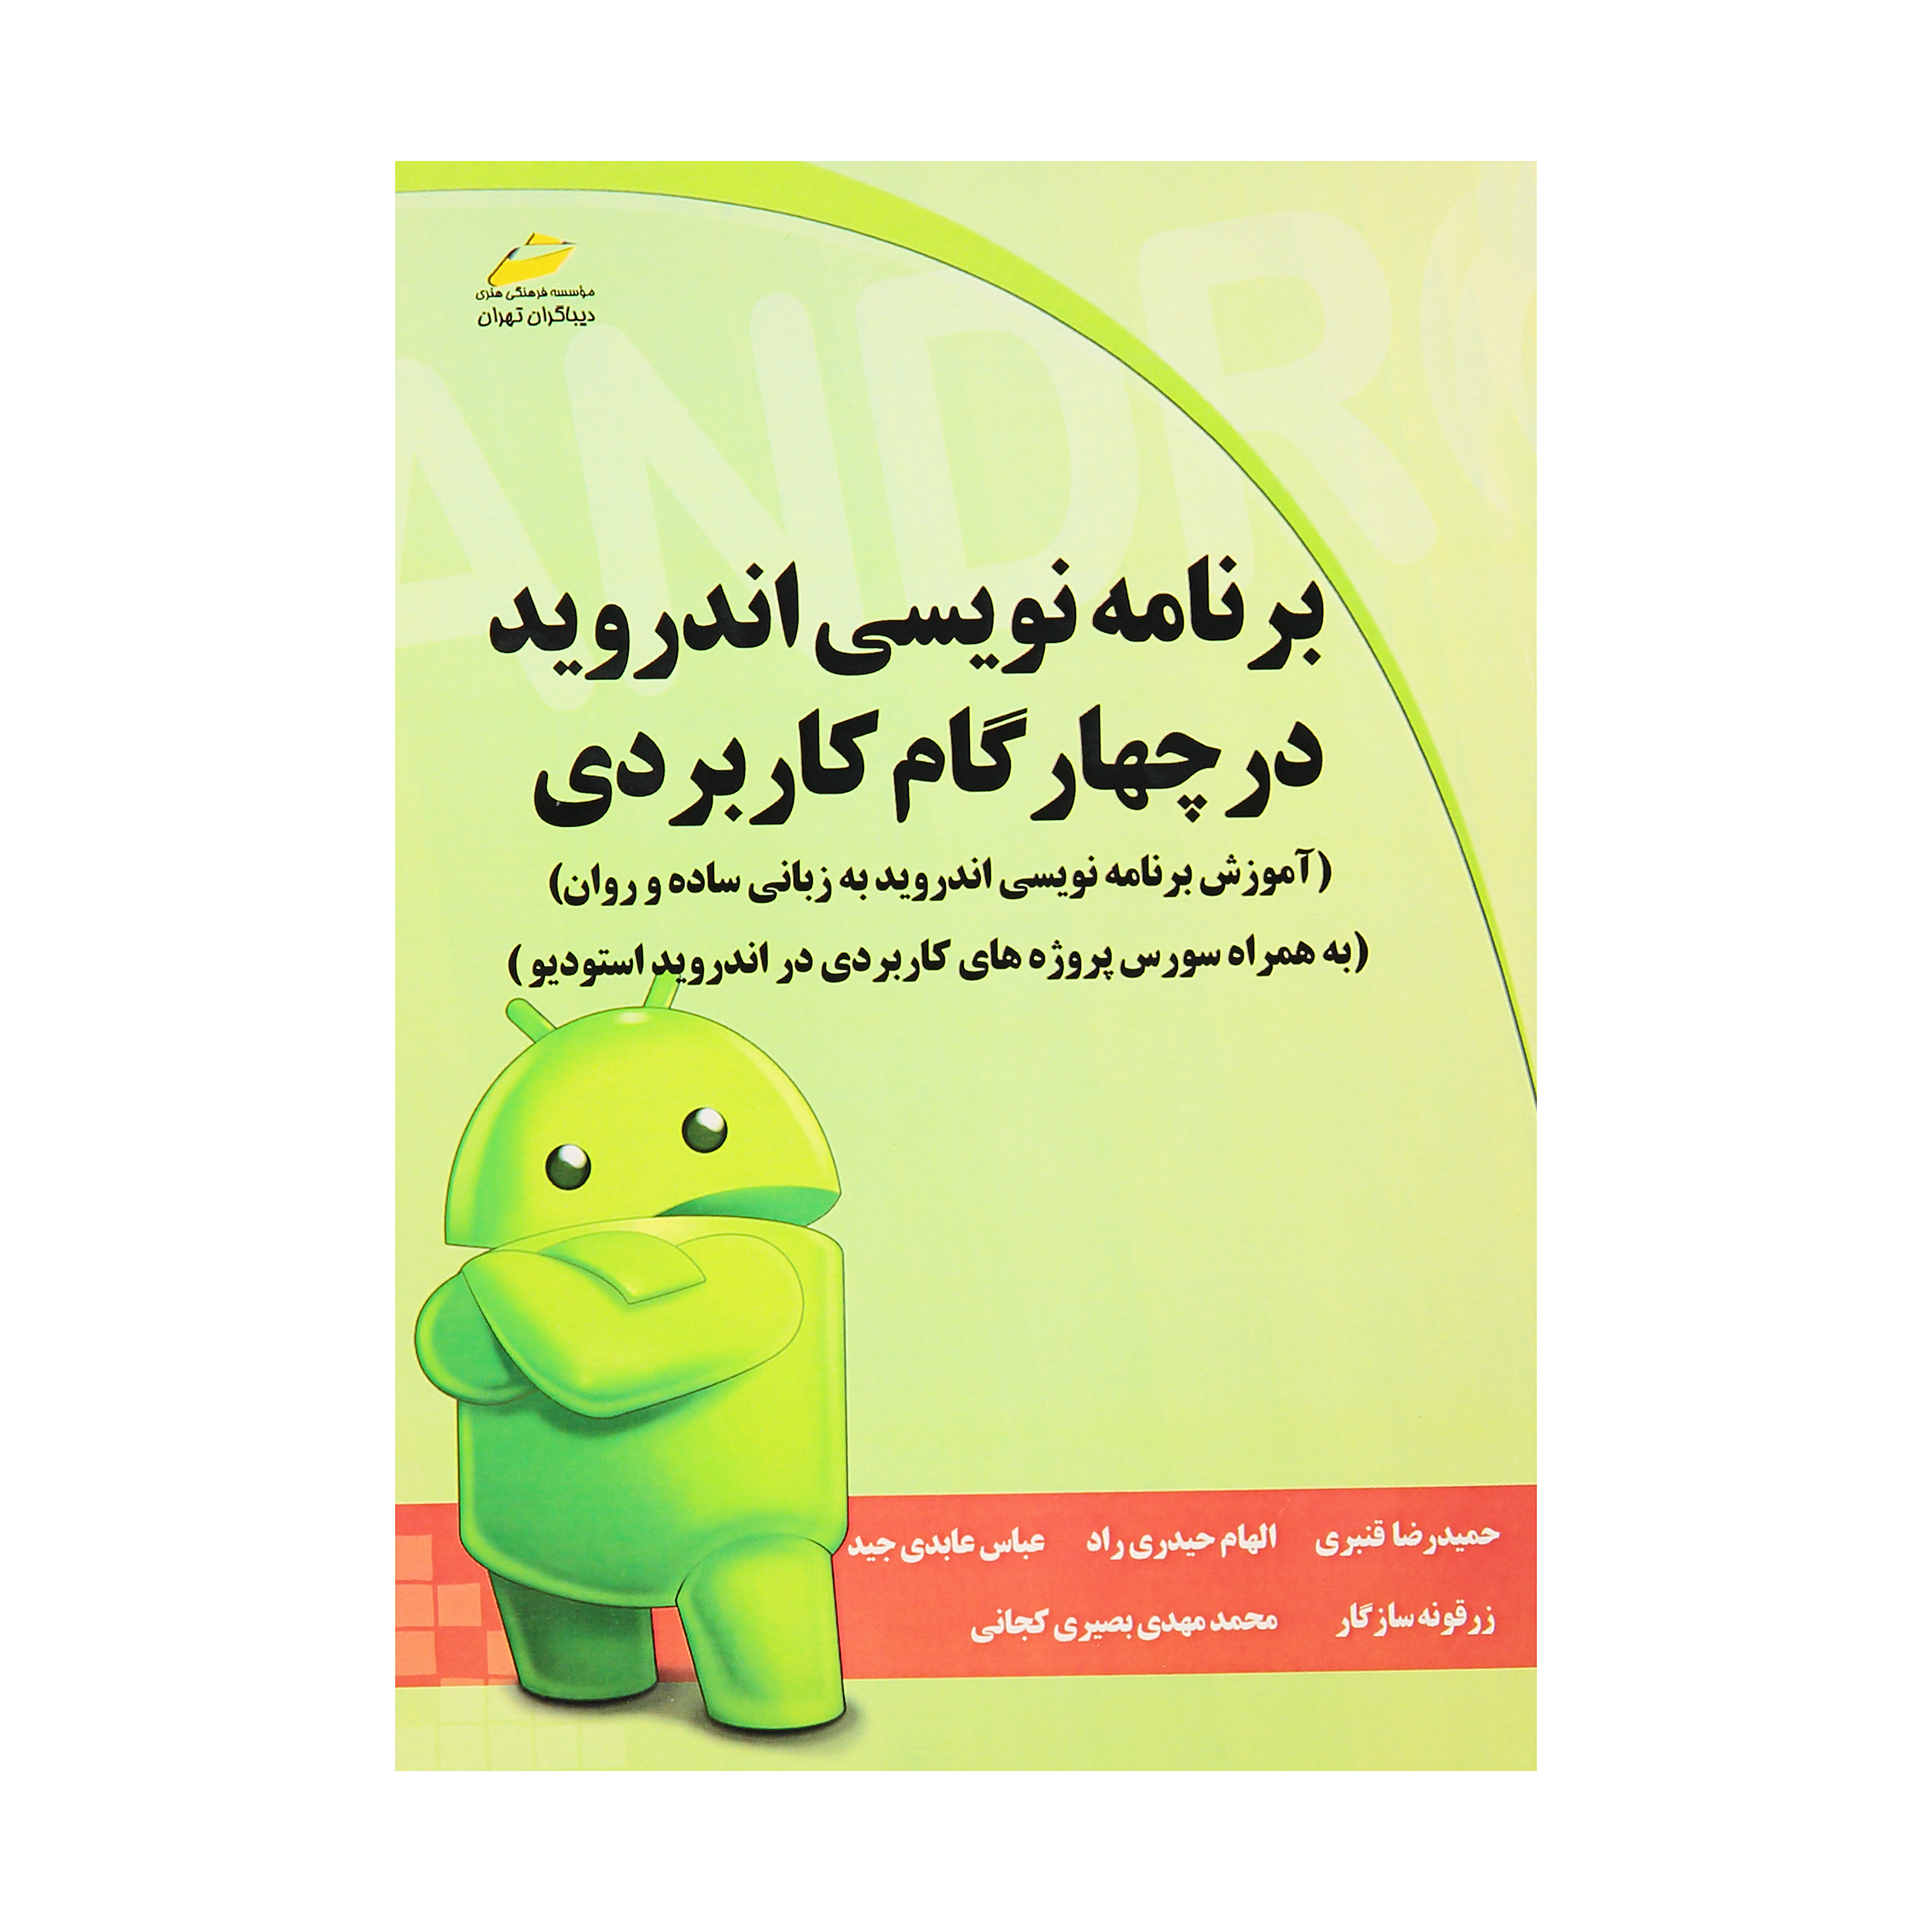 کتاب برنامه نویسی اندروید در چهار گام کاربردی اثر جمعی از نویسندگان انتشارات دیباگران تهران